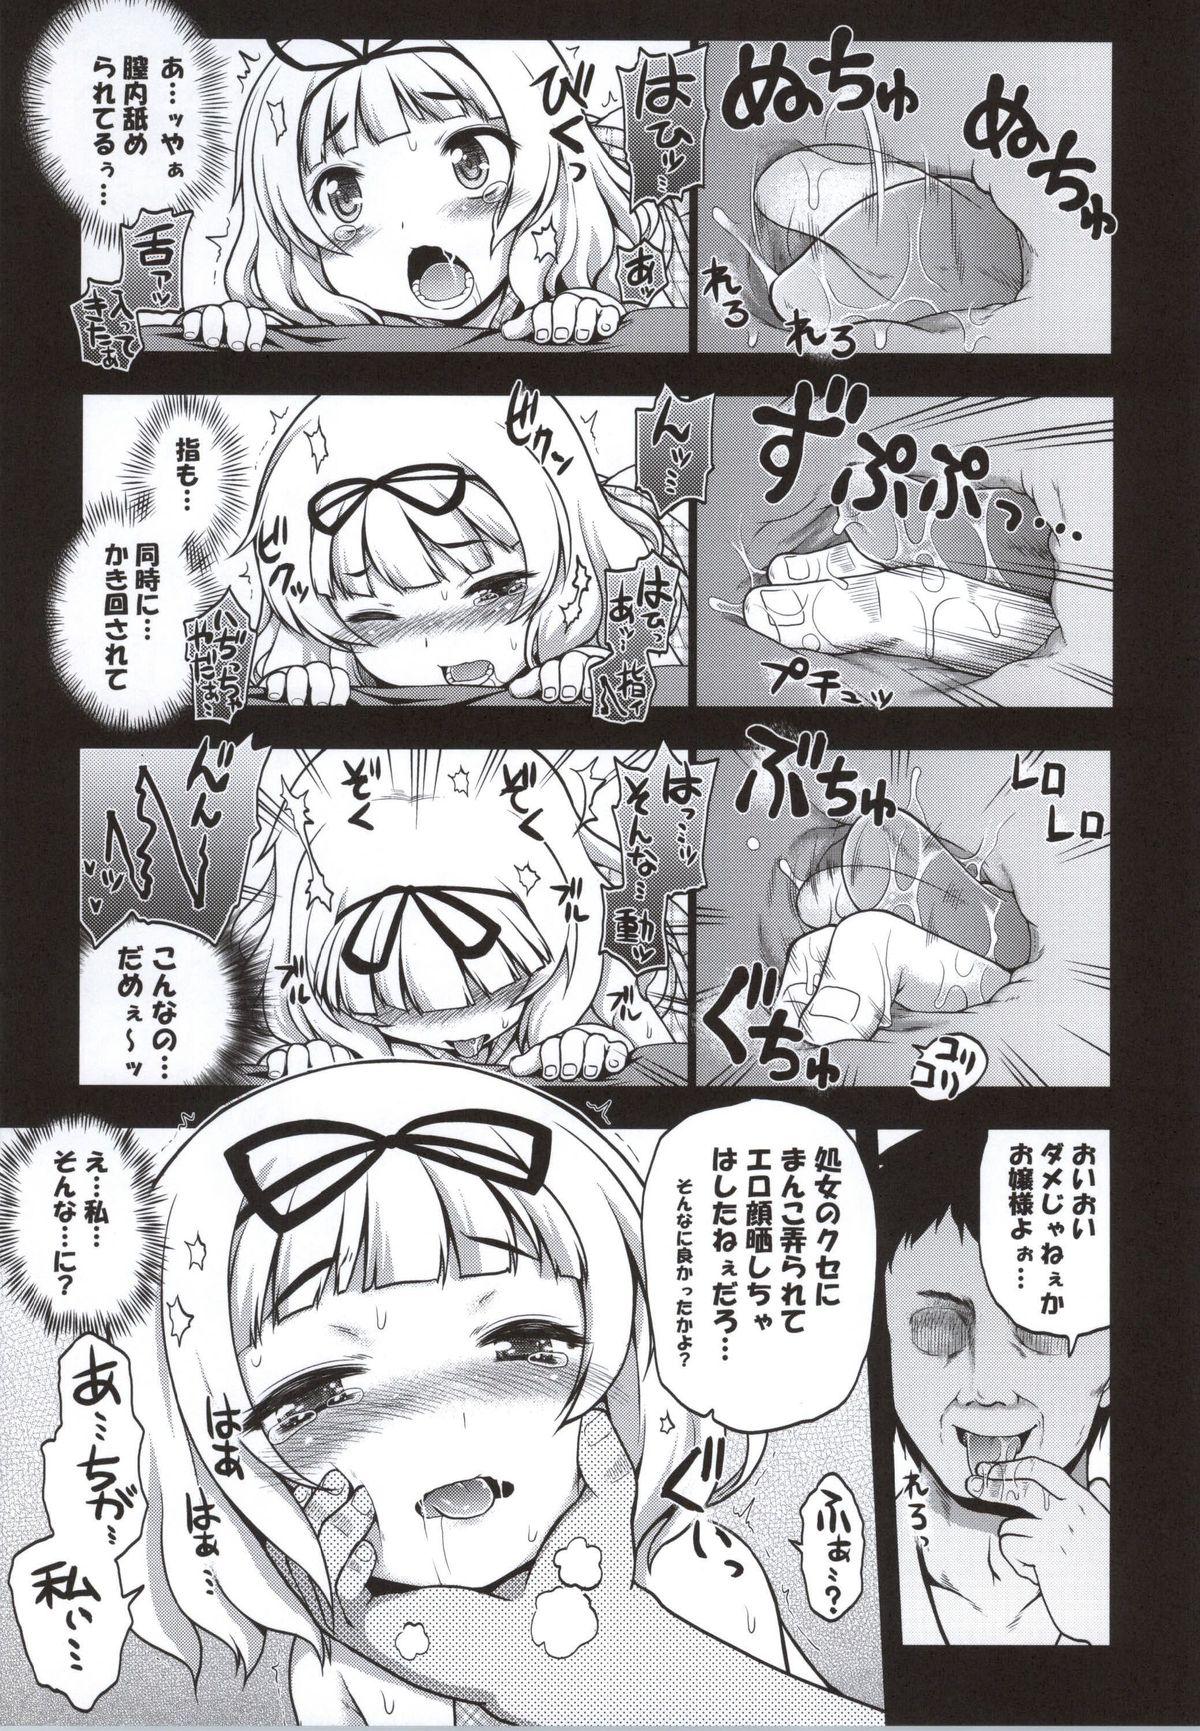 Rimjob Ochi Usa - Gochuumon wa usagi desu ka Chicks - Page 10